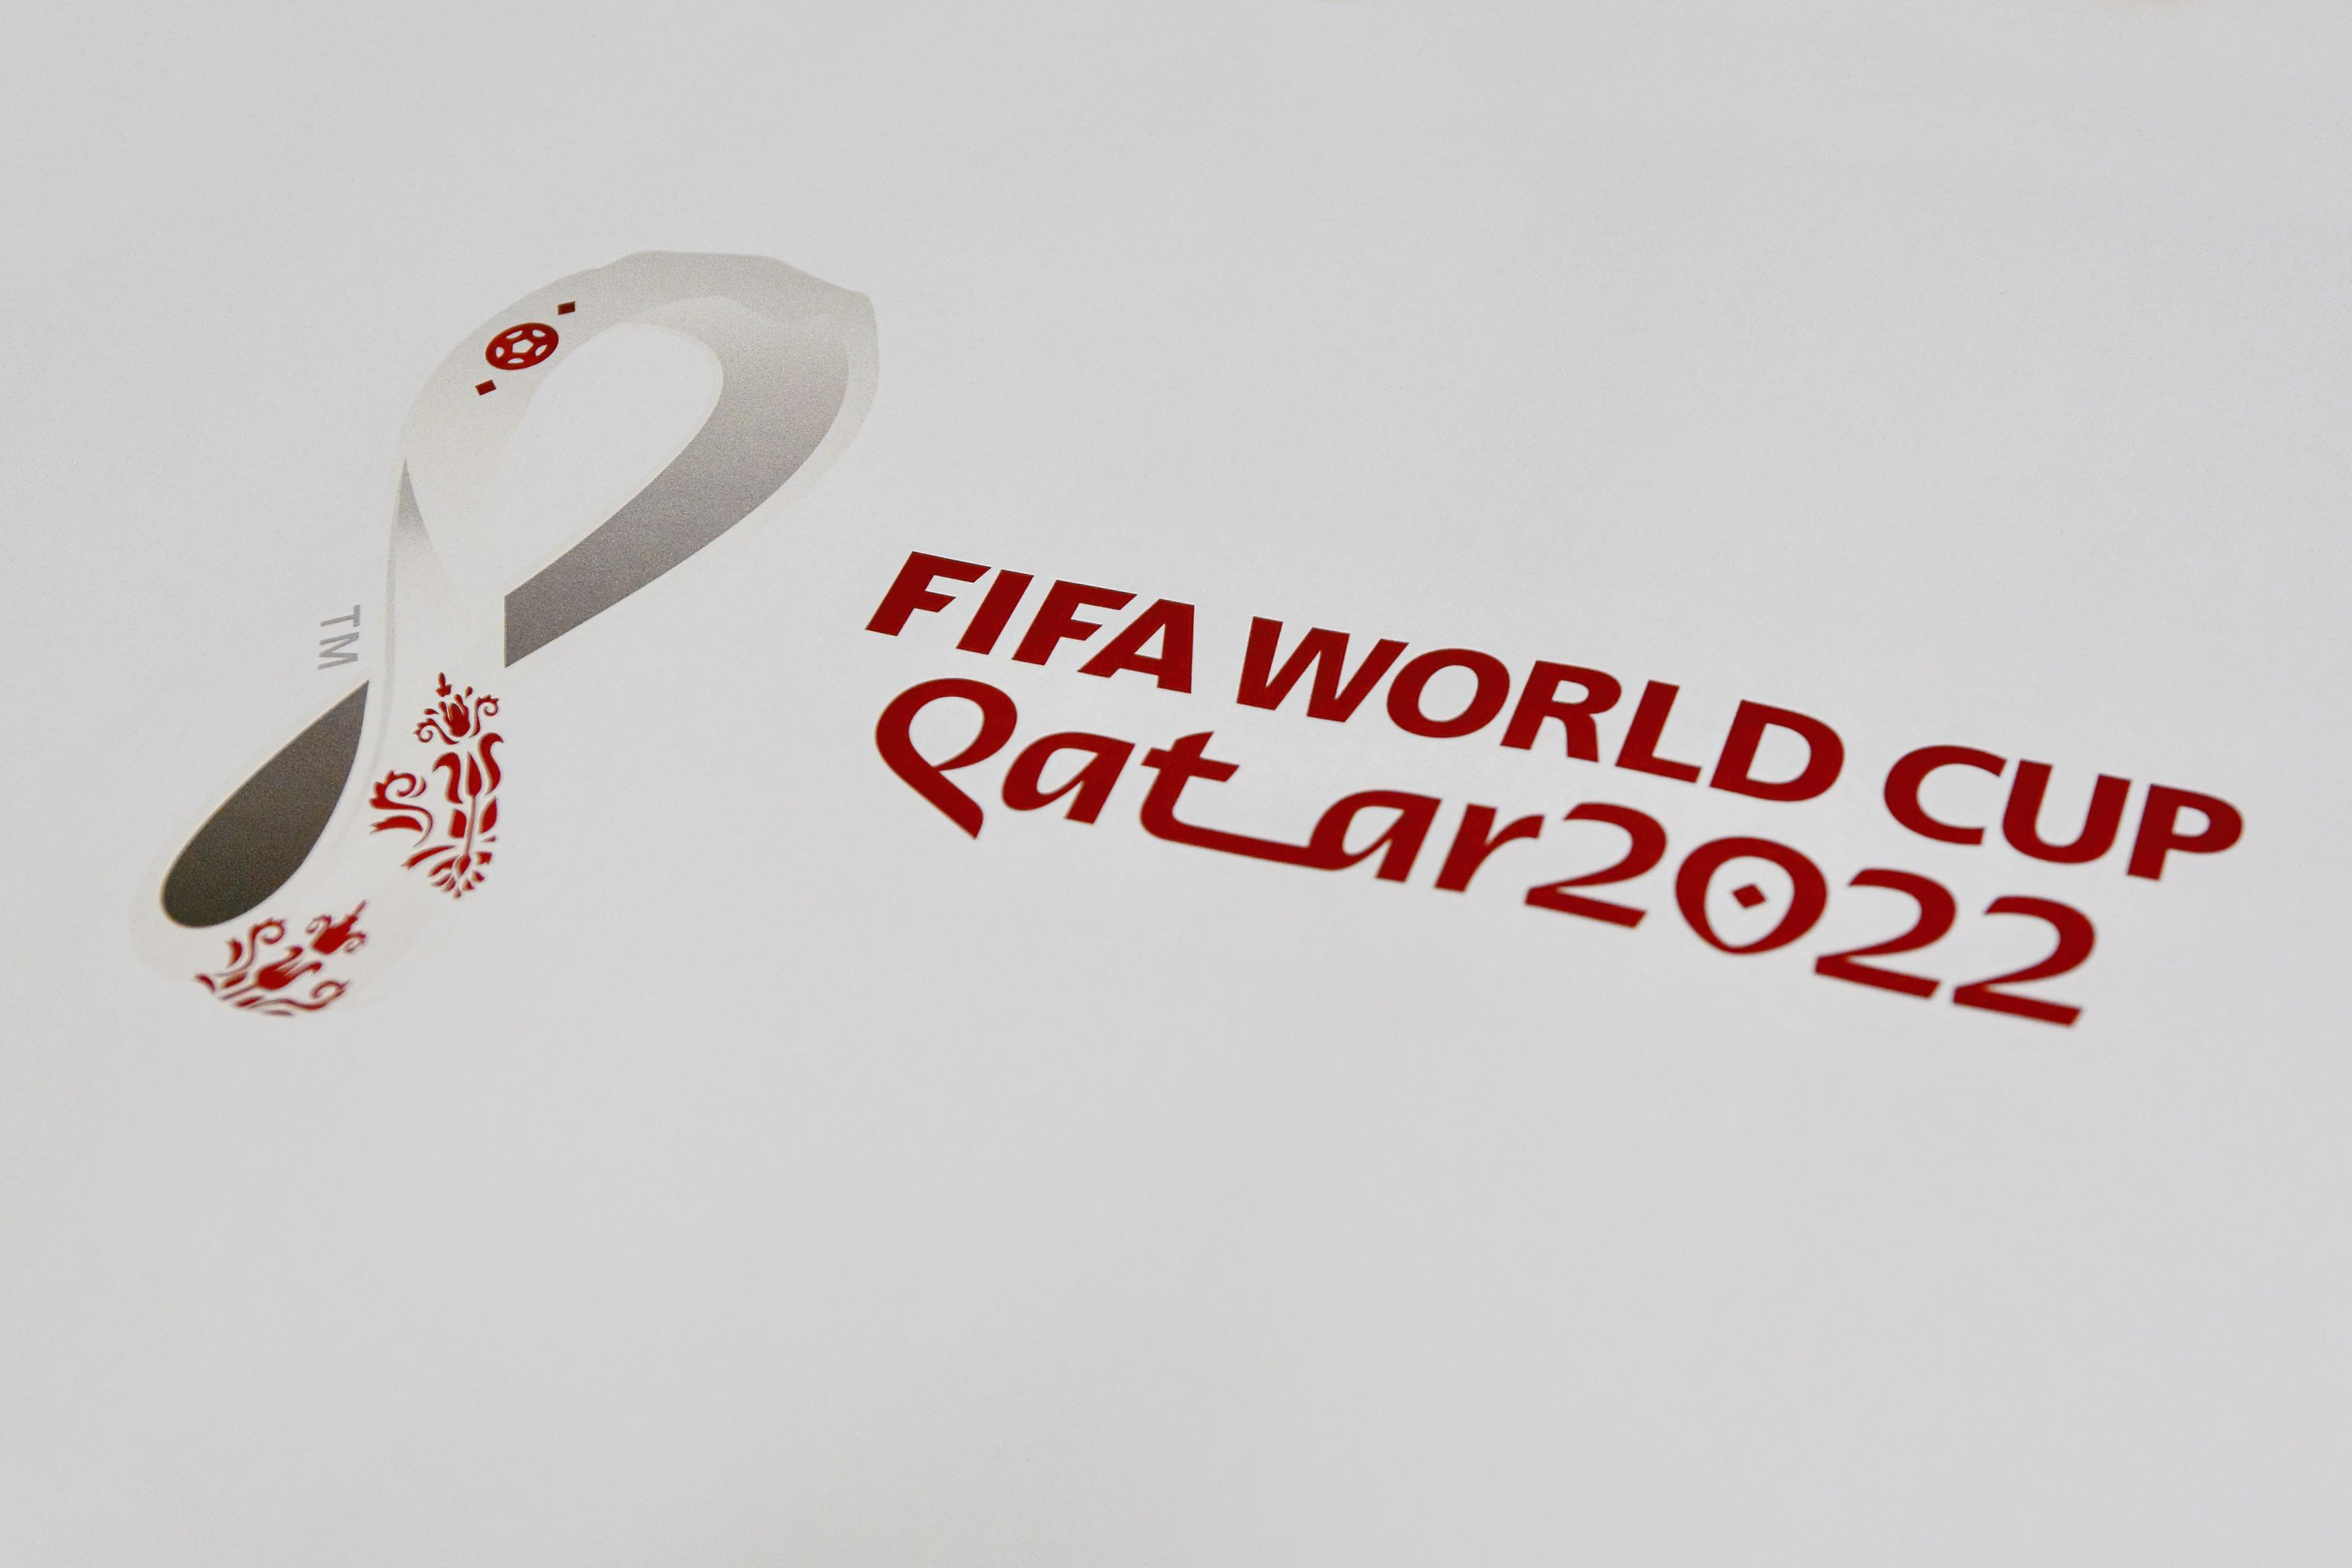 Lịch thi đấu World Cup 2022 ở Qatar chính thức thay đổi